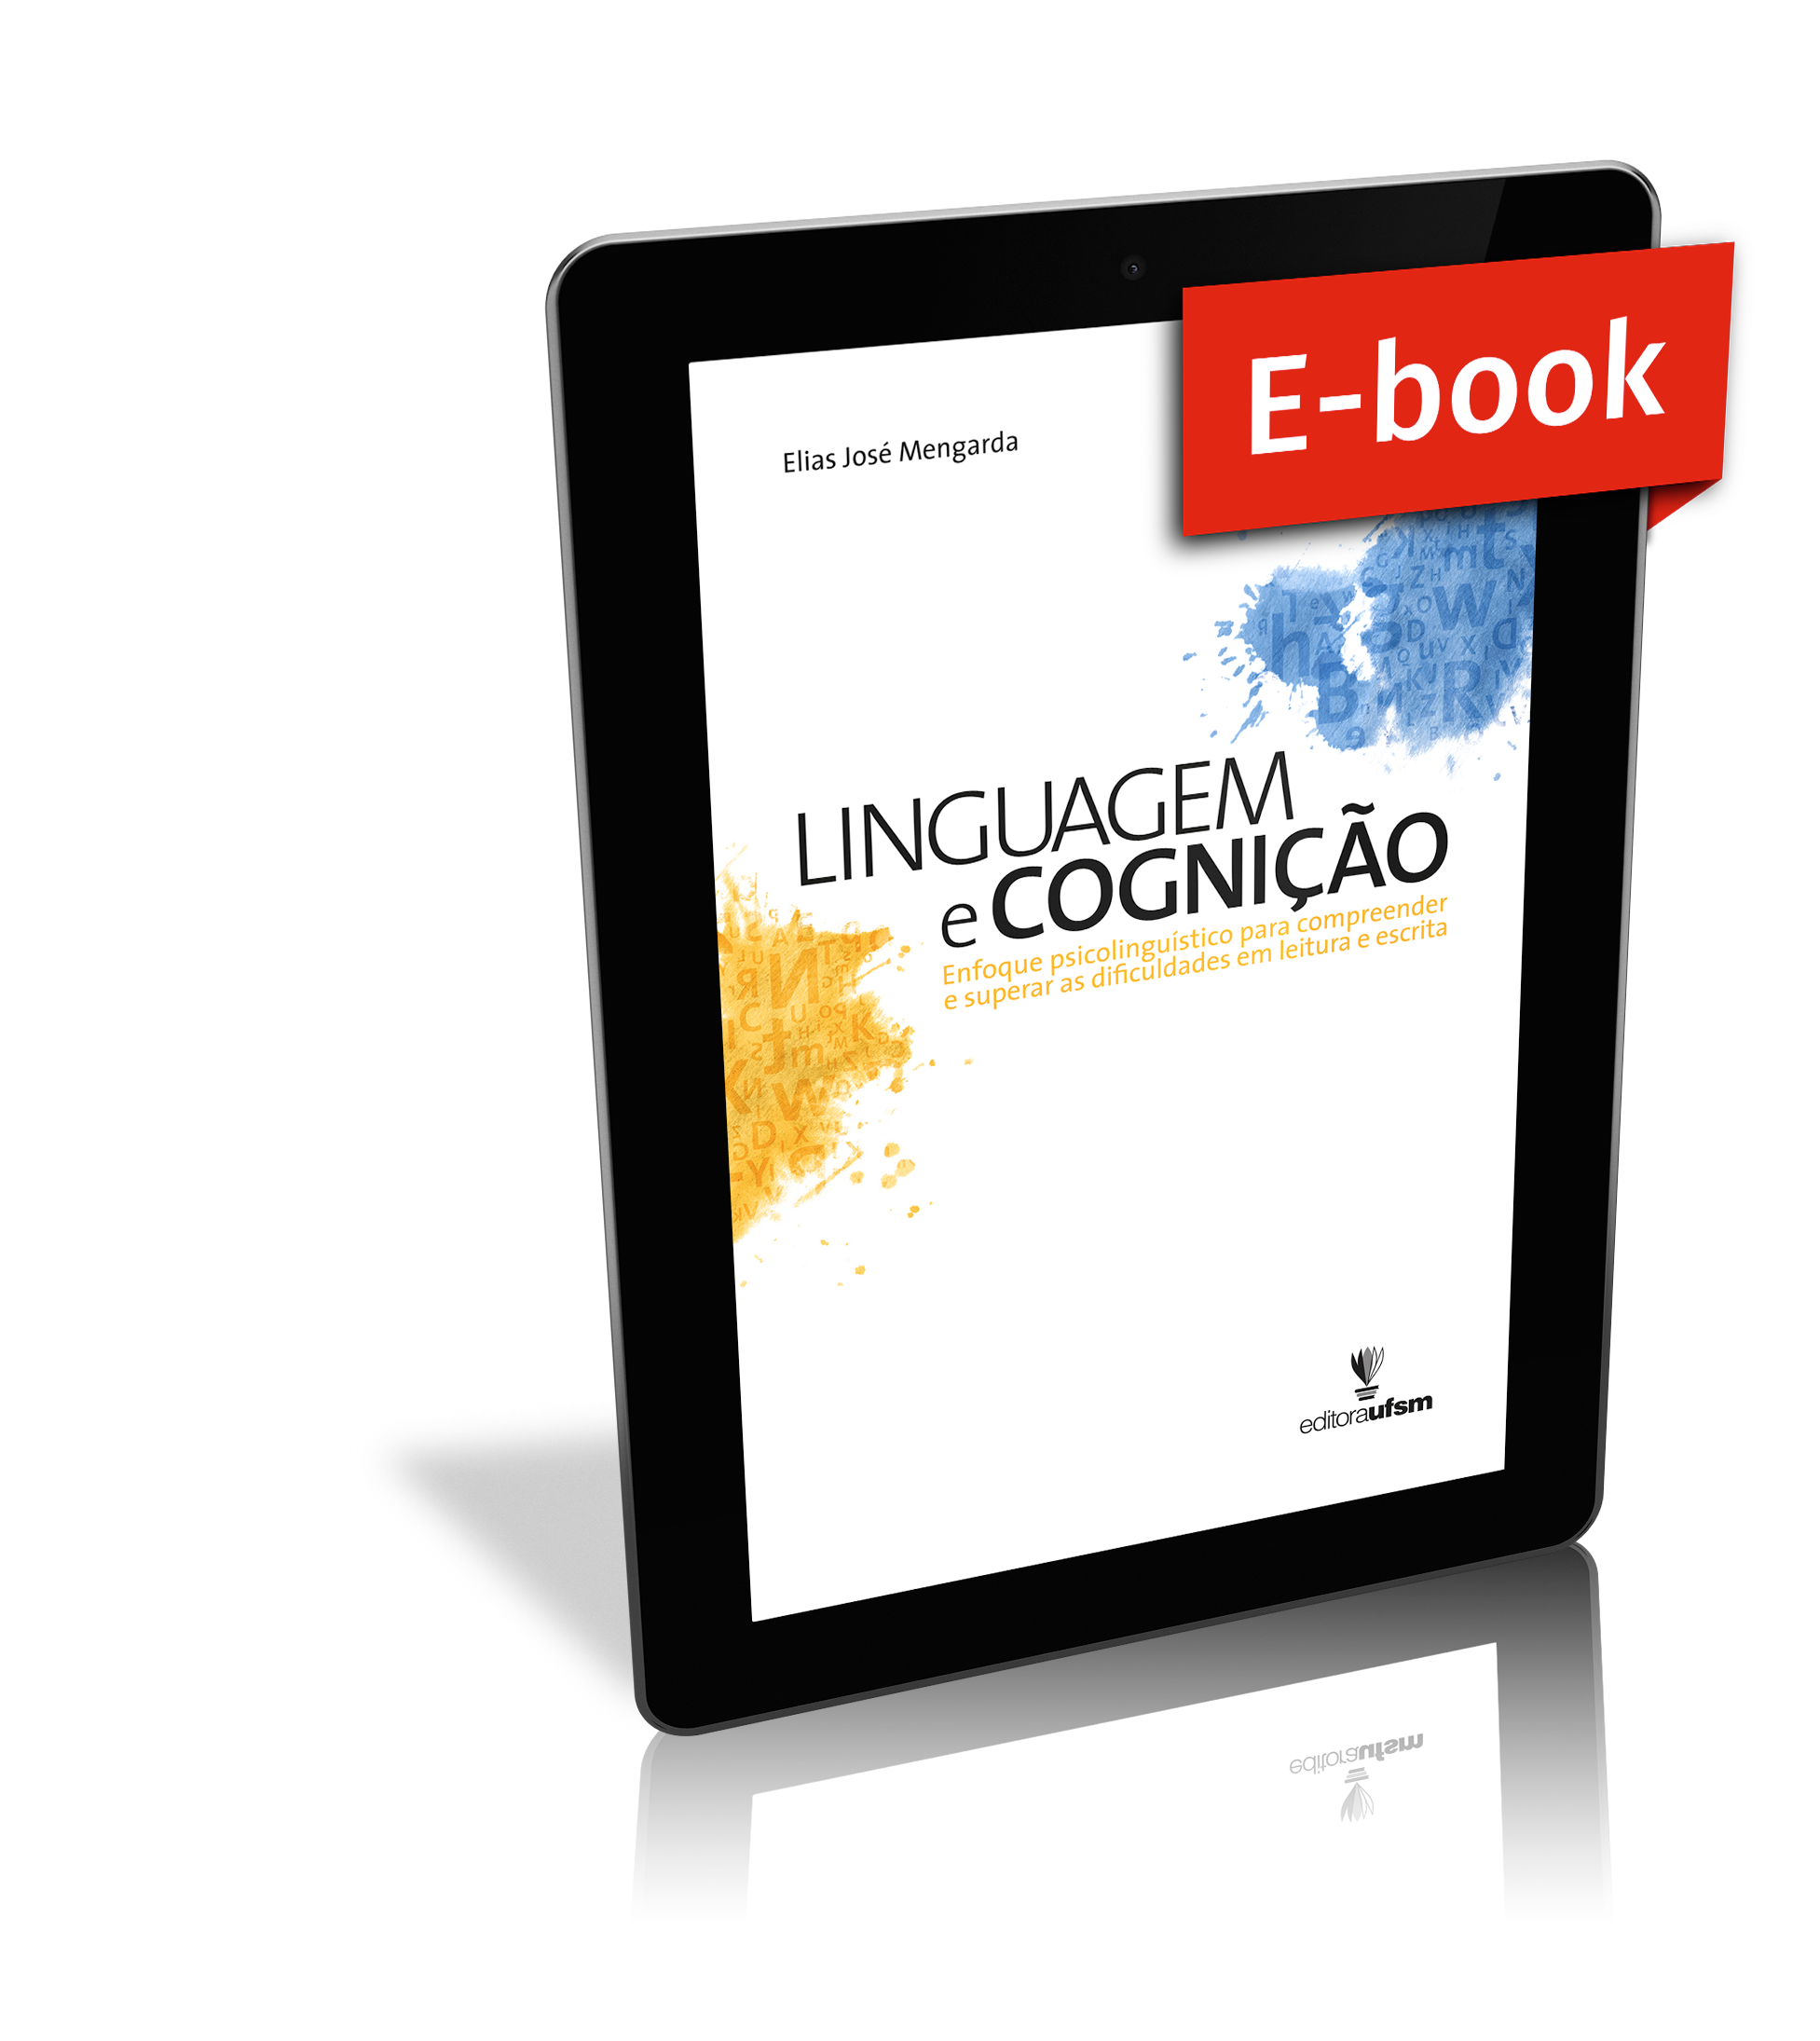 Capa do ebook Linguagem e Cognição: enfoque psicolinguístico para compreender e superar as dificuldades em leitura e escrita